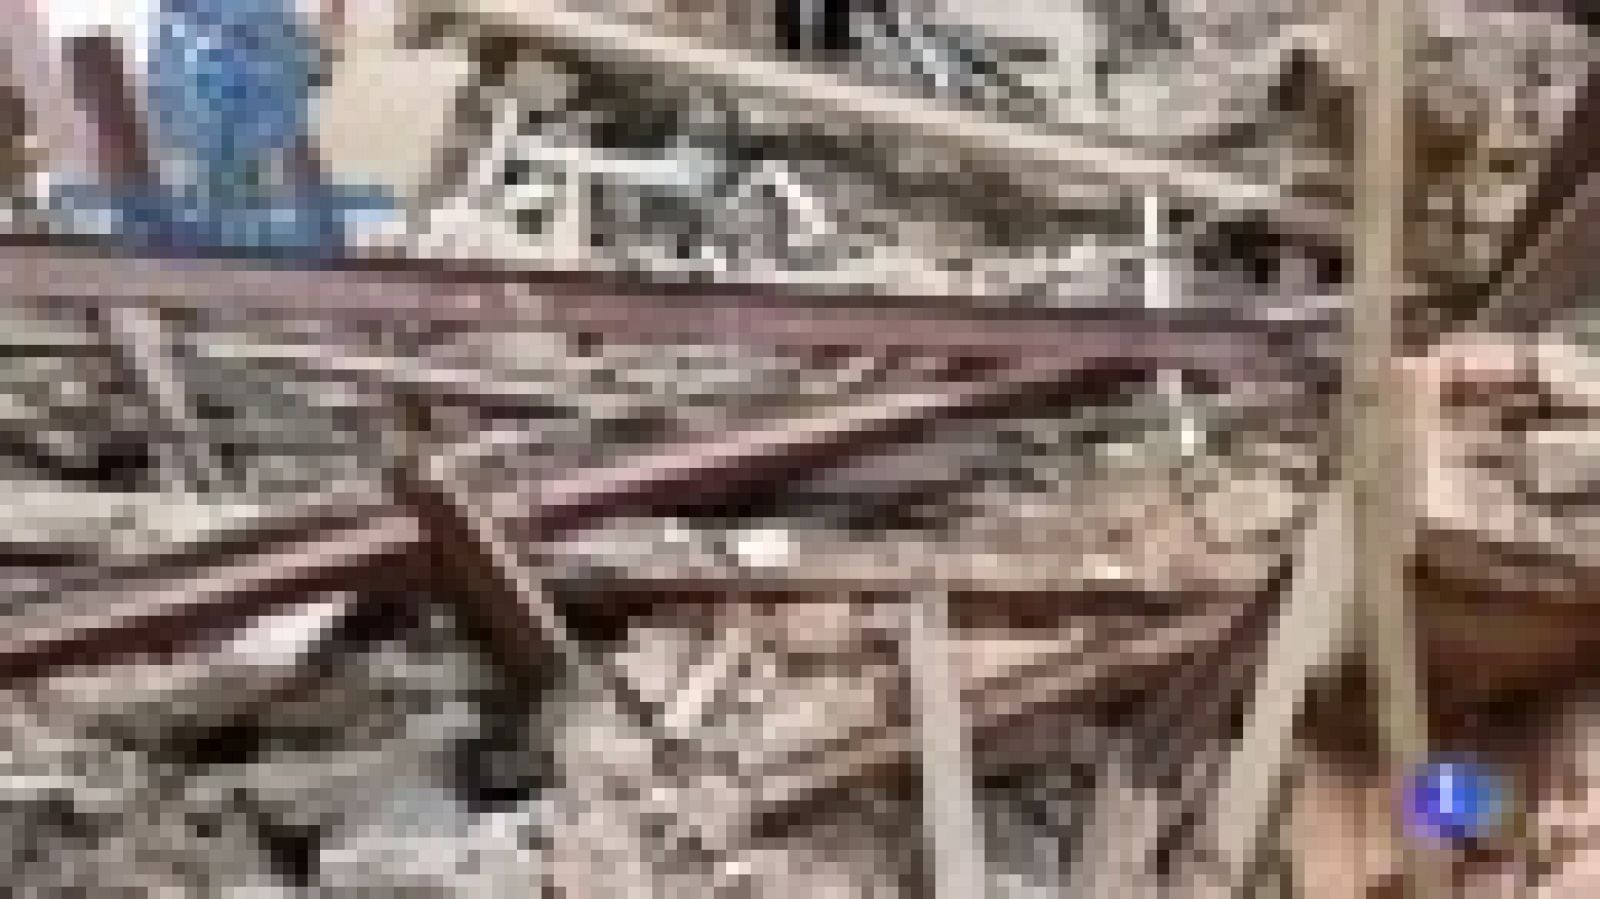 Derrumbe edificio Madrid: Búsqueda a contra reloj de los obreros desaparecidos en el derrumbe de un edificio en Madrid